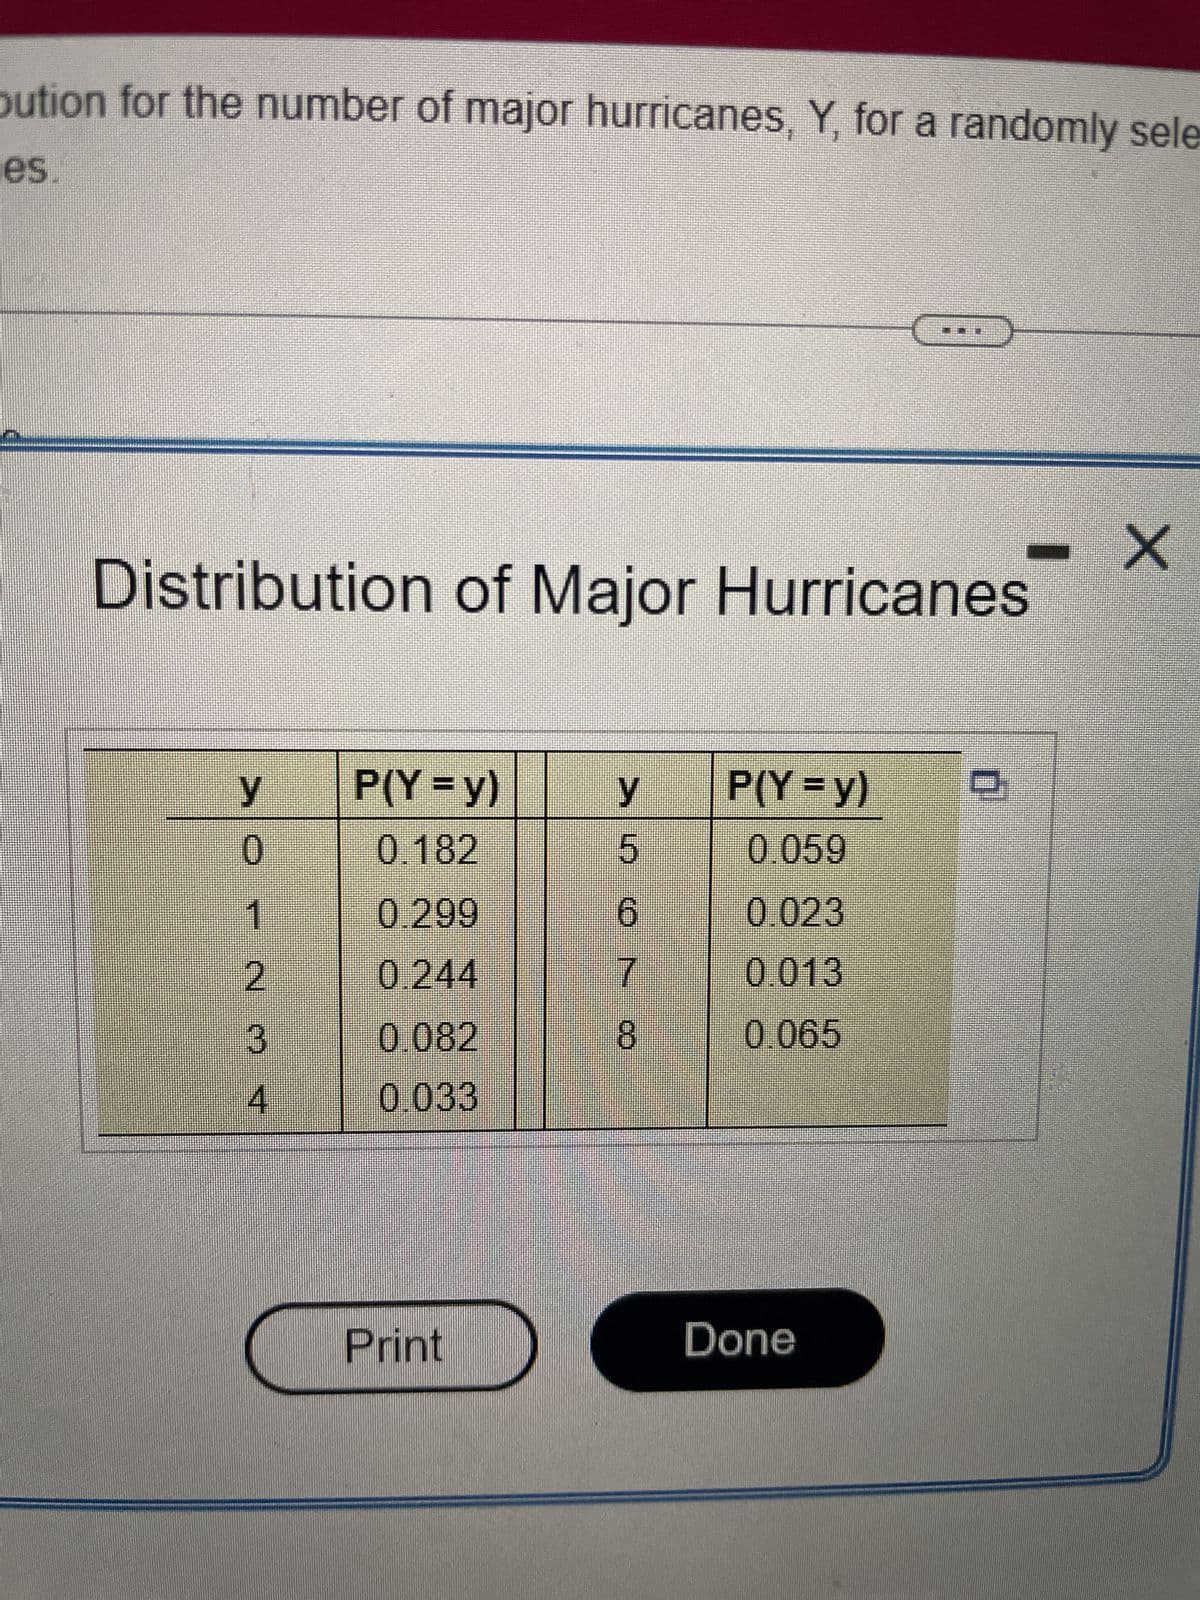 bution for the number of major hurricanes, Y, for a randomly sele
es.
$11.
Distribution of Major Hurricanes
y
0
1
CN
3
4
P(Y=y)
0.182
0.299
0.244
0.082
0.033
Print
y
5
6
7
8
P(Y = y)
0.059
0.023
0.013
0.065
Done
0
X